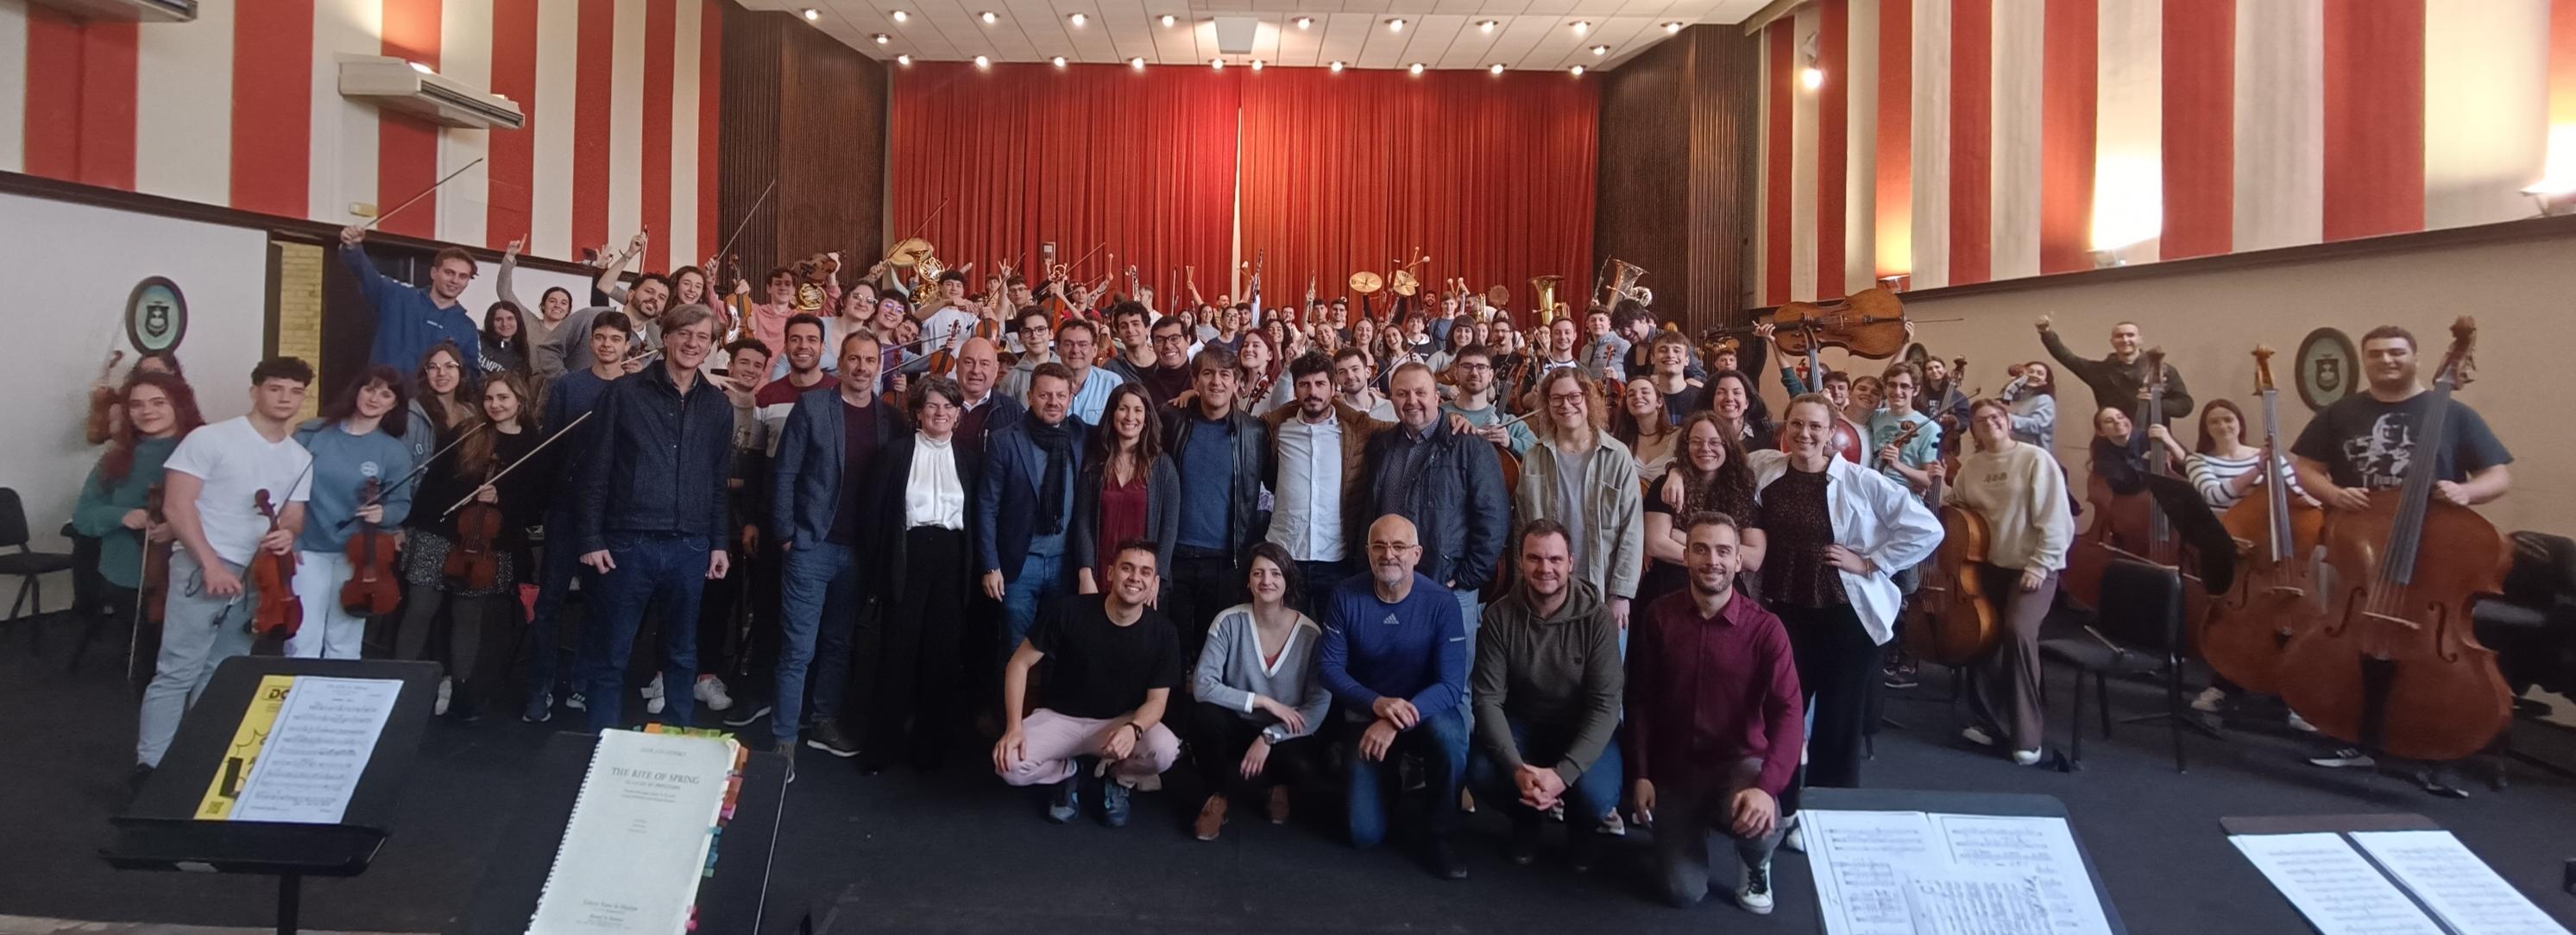 La Orquesta Joven de Andalucía ultima el gran estreno de los conciertos por su 30 aniversario